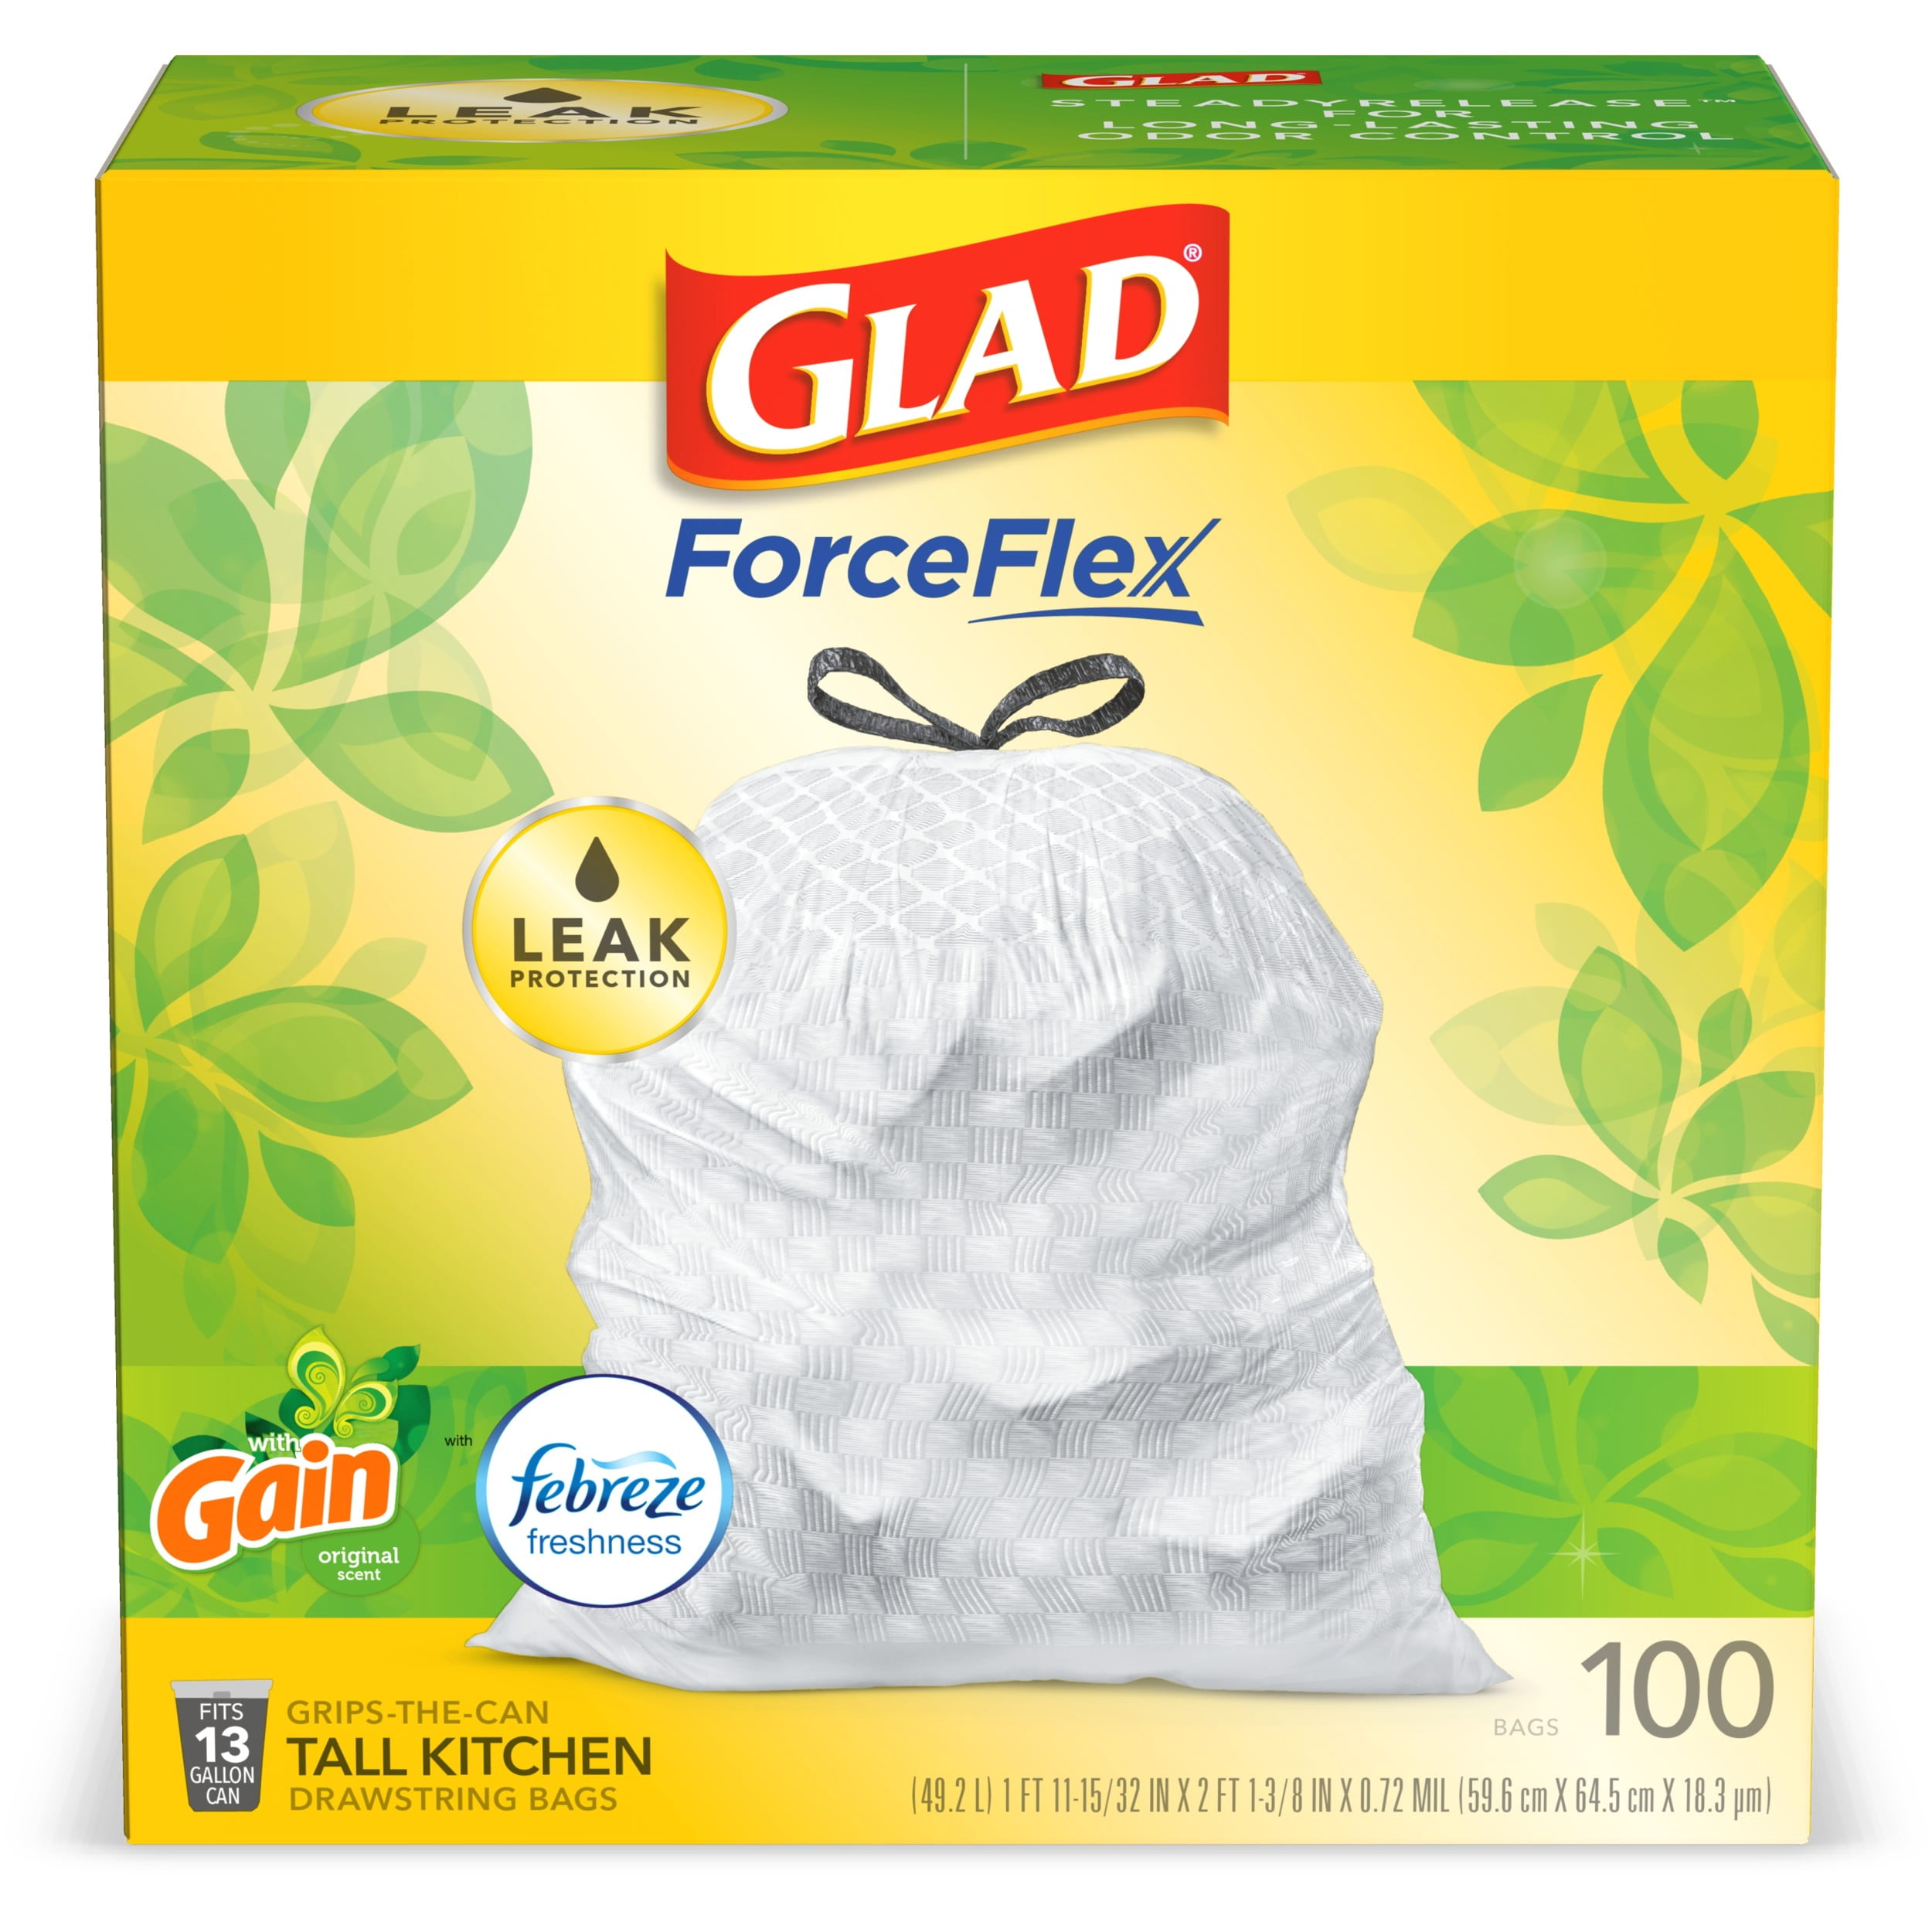 Glad® Wrap 100m - Glad RSA